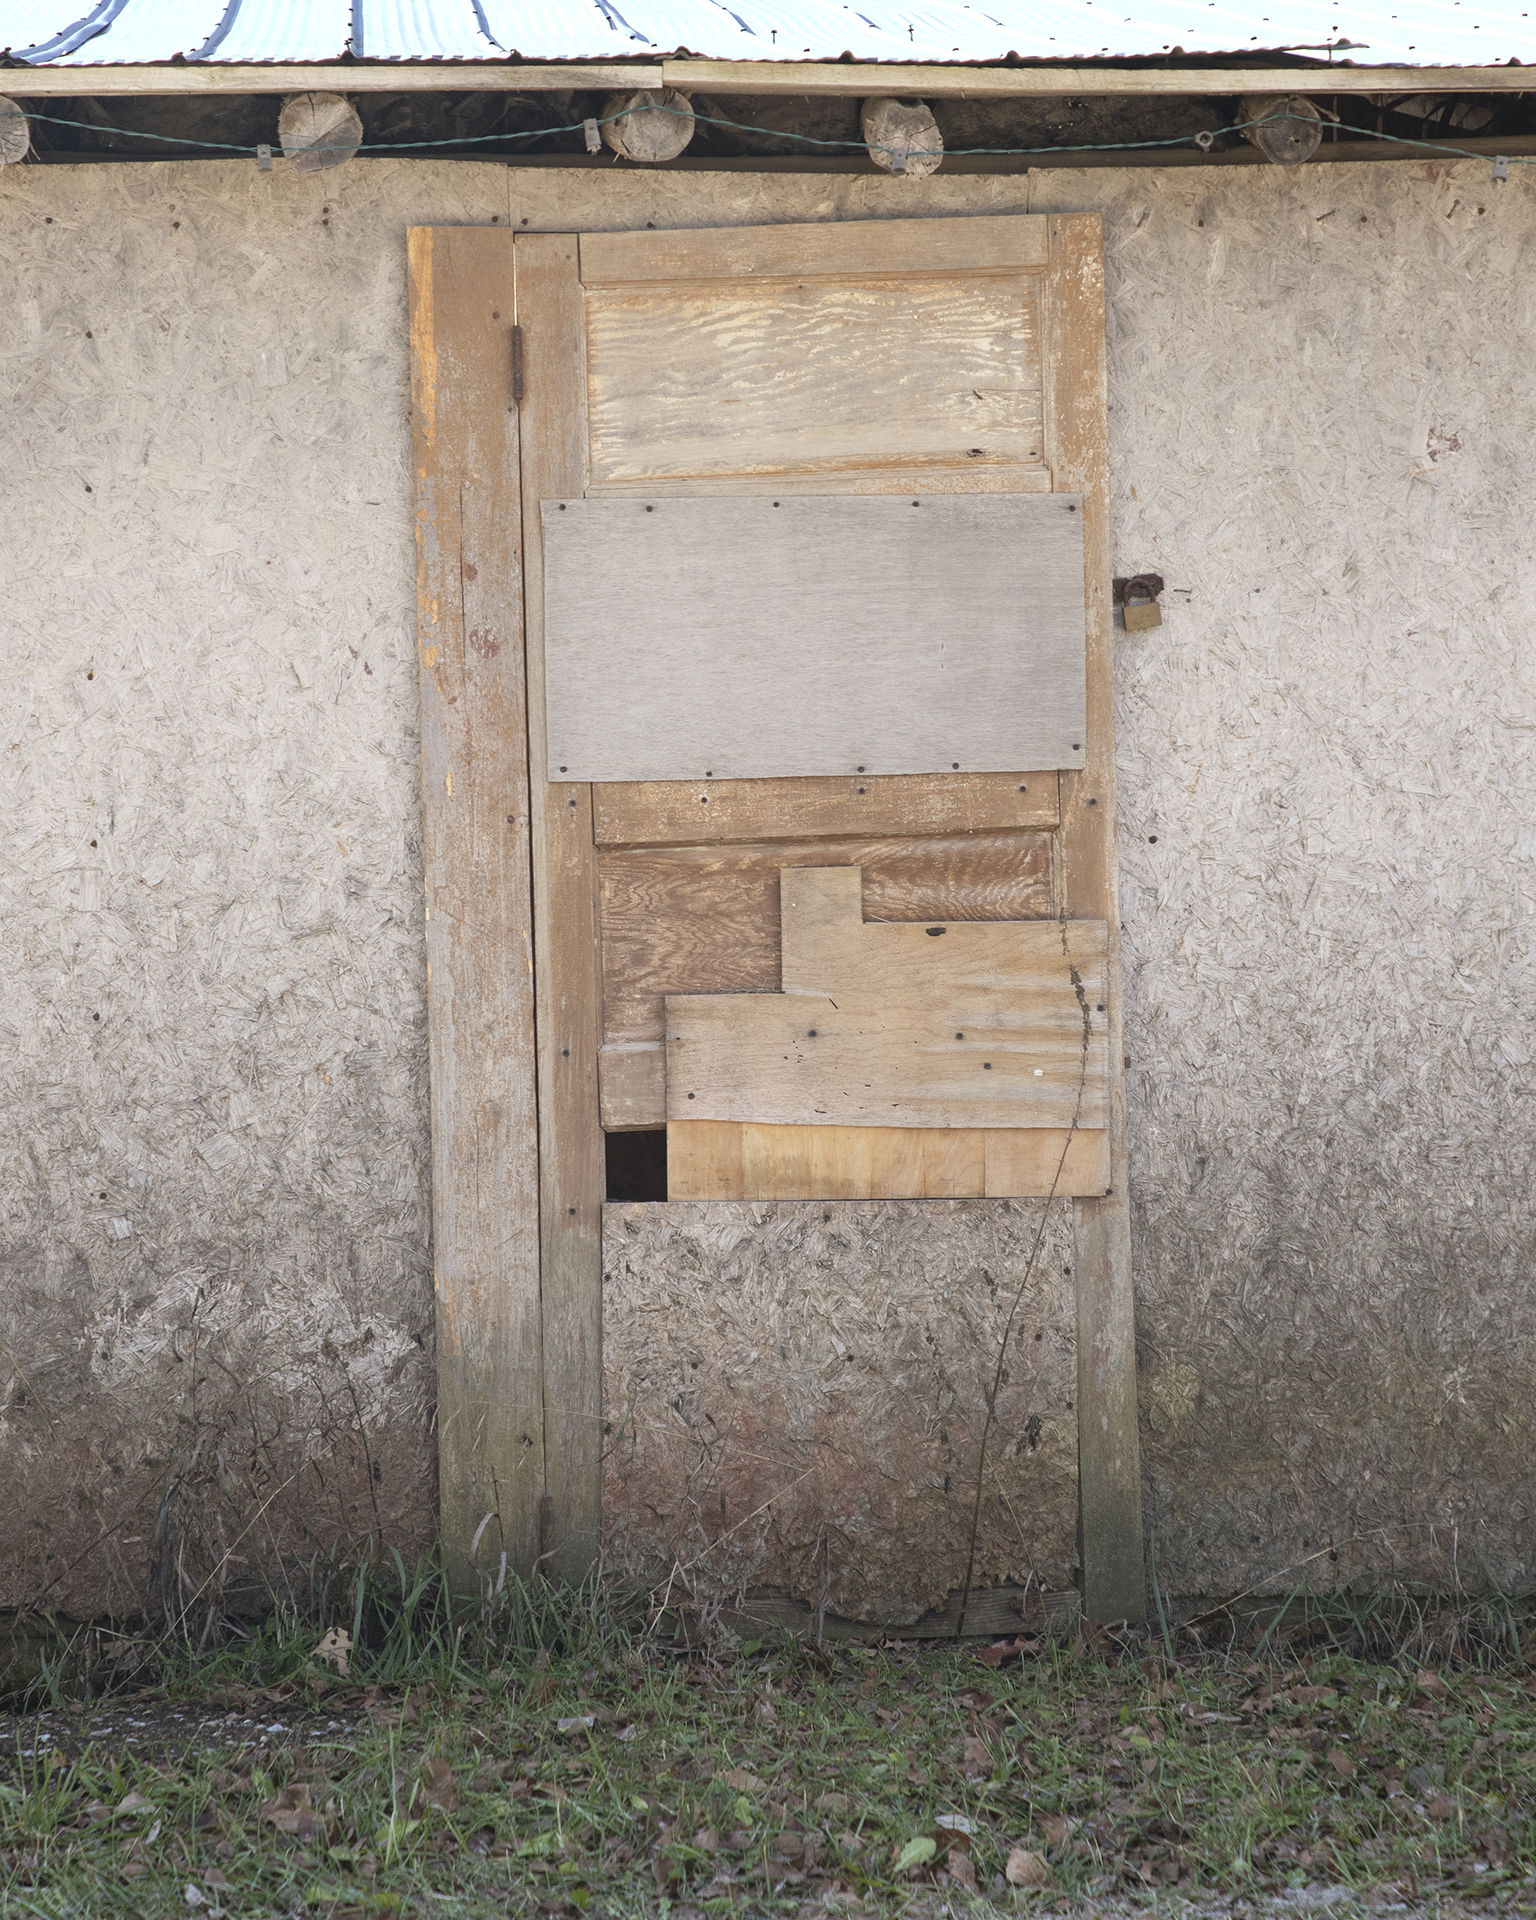 Door: A broken down and mended wooden door fills the frame.